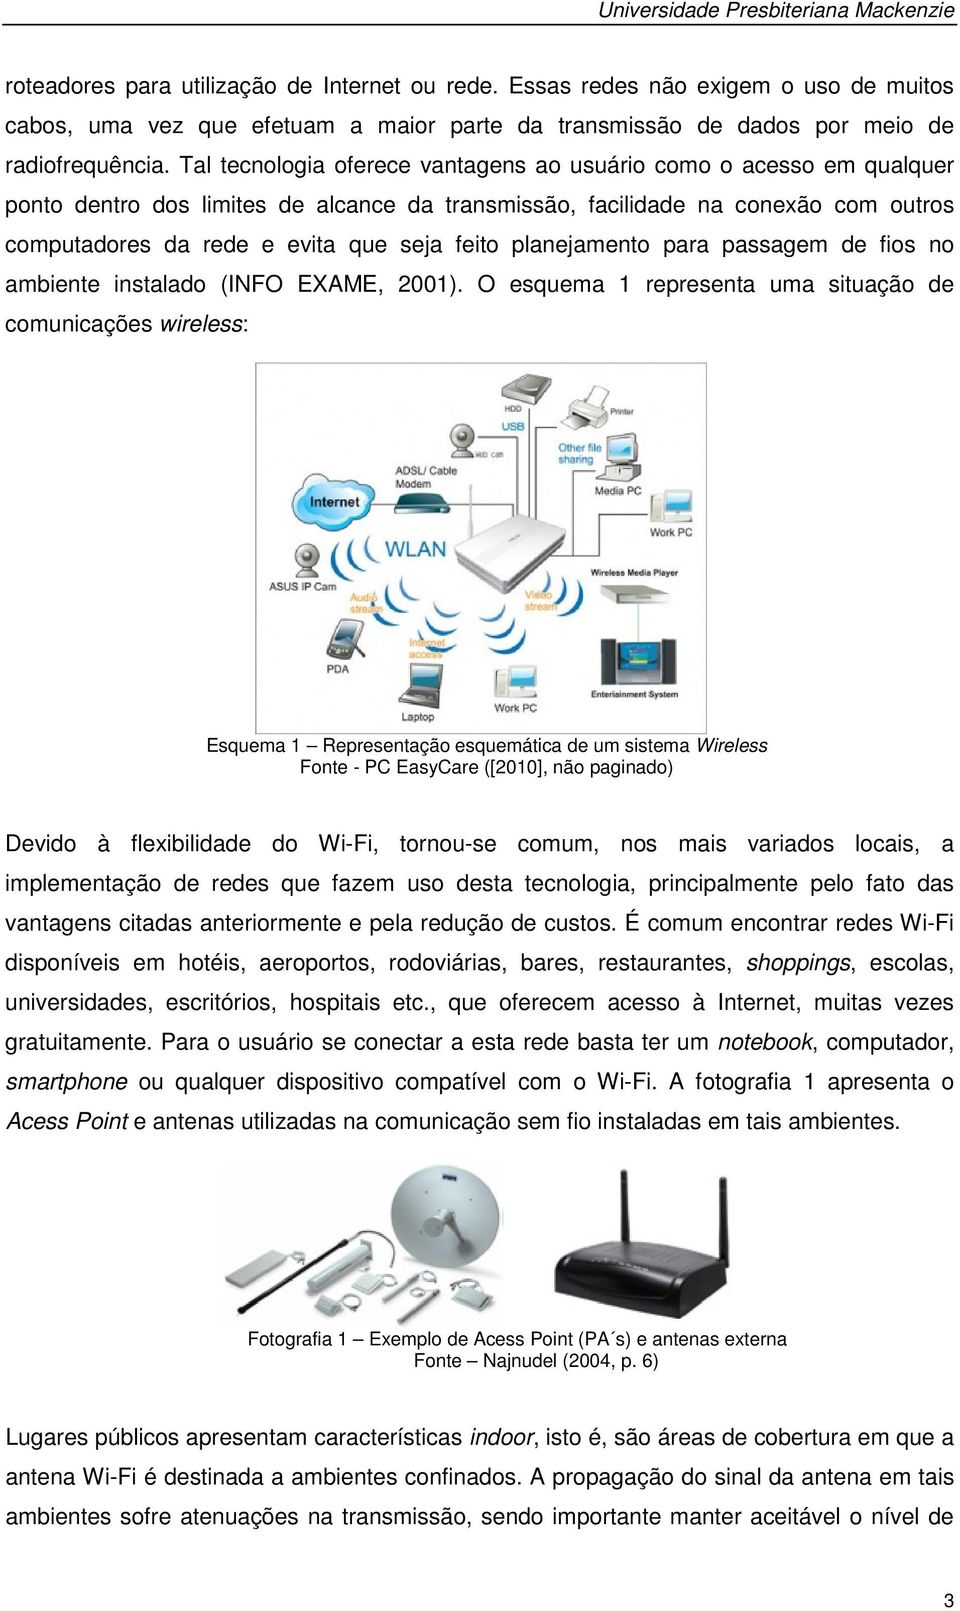 Tal tecnologia oferece vantagens ao usuário como o acesso em qualquer ponto dentro dos limites de alcance da transmissão, facilidade na conexão com outros computadores da rede e evita que seja feito